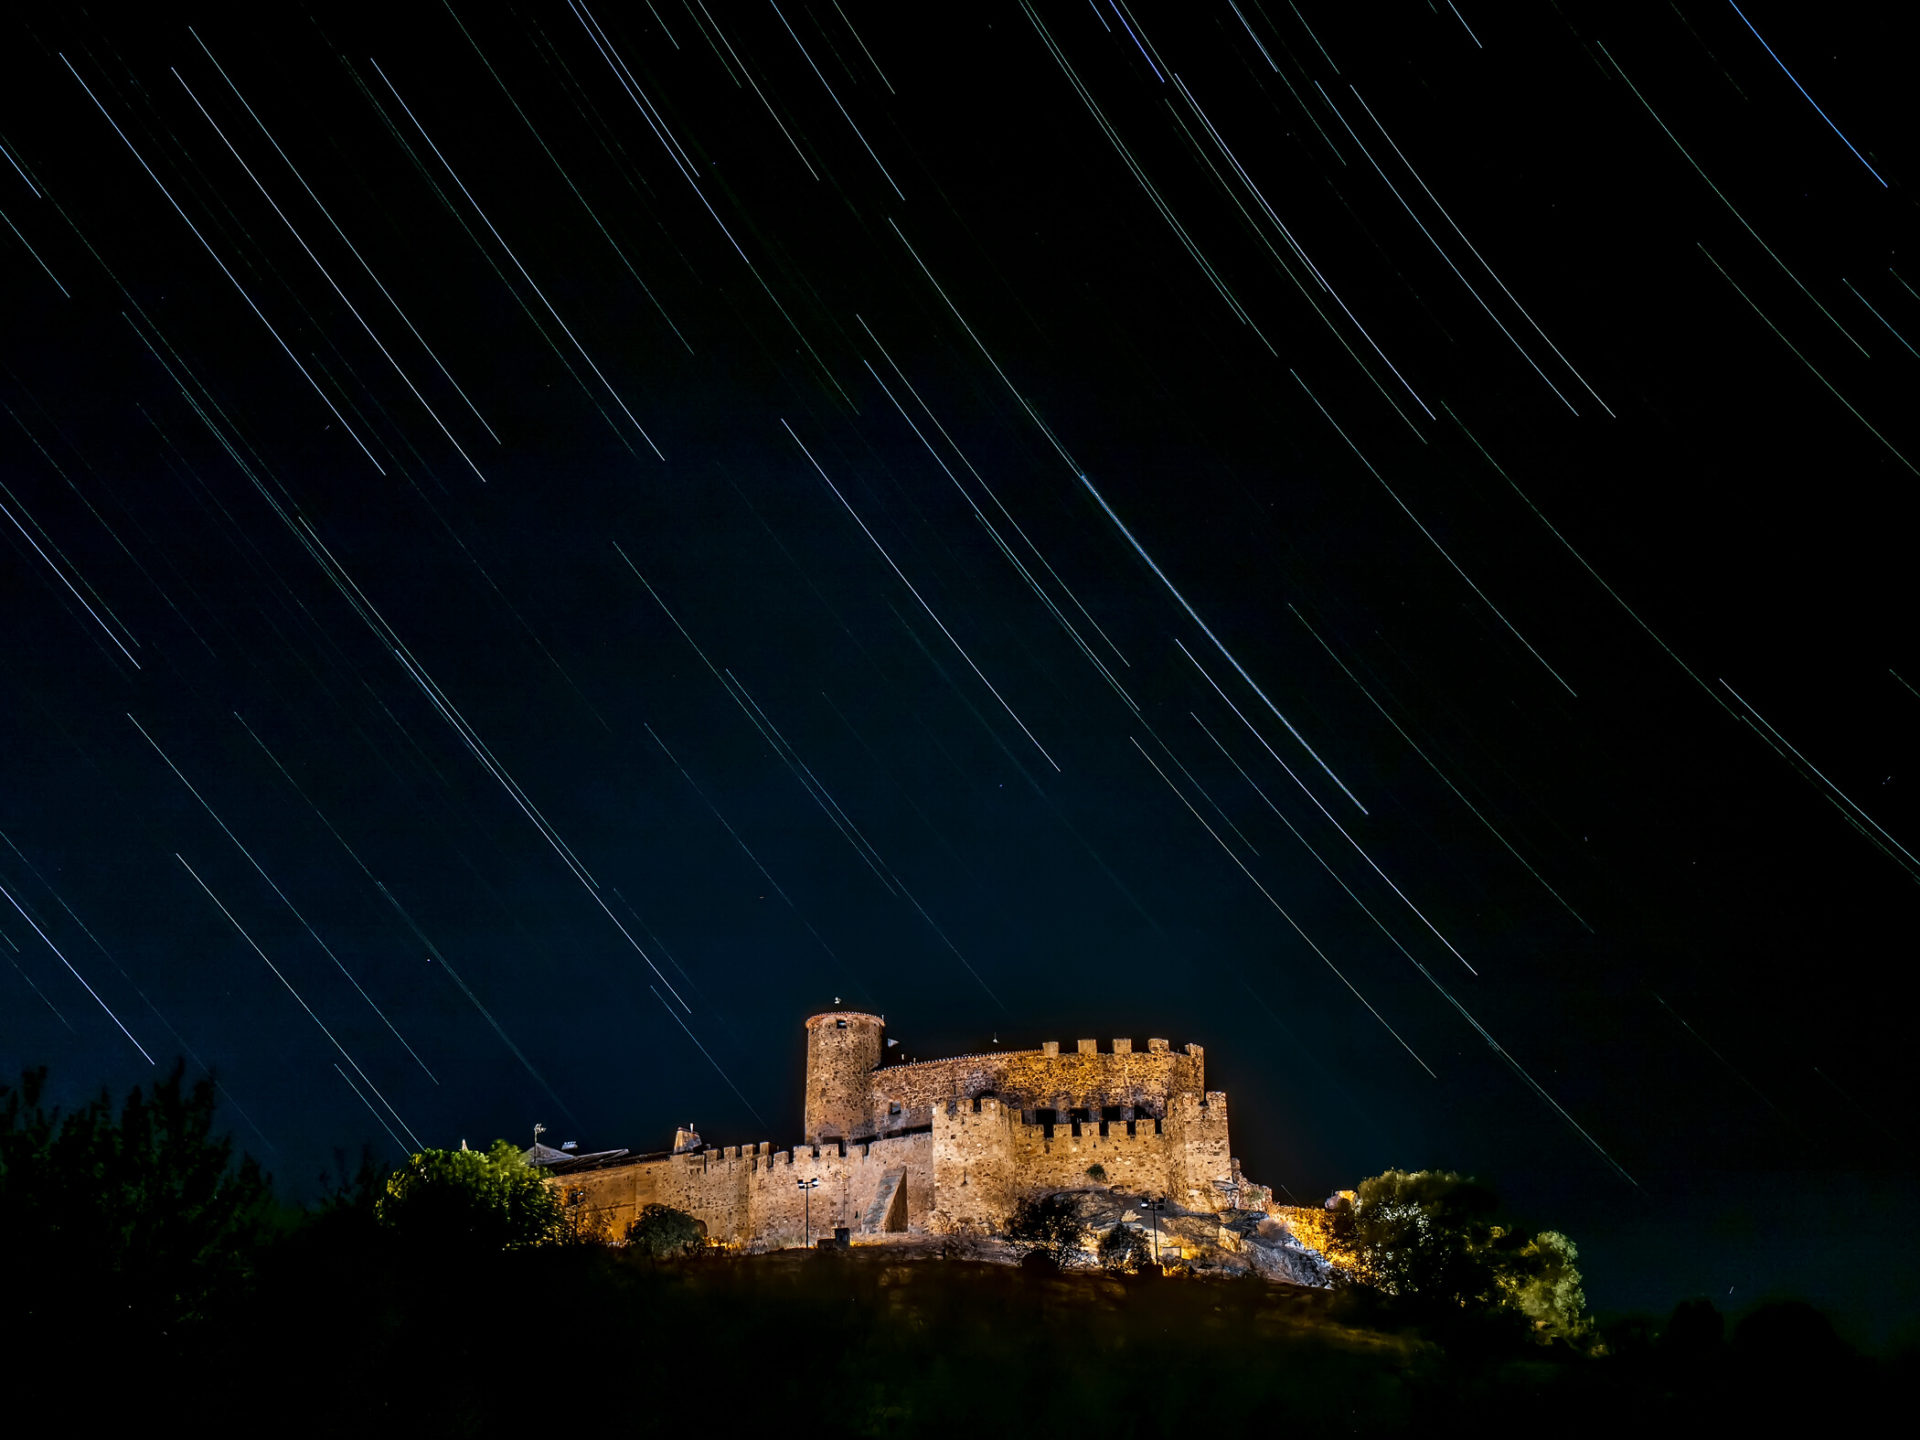 Castillo de Encomienda (Extremadura) - Andrés Magai - Lumix G90, F8, V 4seg, Liew View Composite 50 minutos, Iso 100, Lumix 8-18mm a 18mm